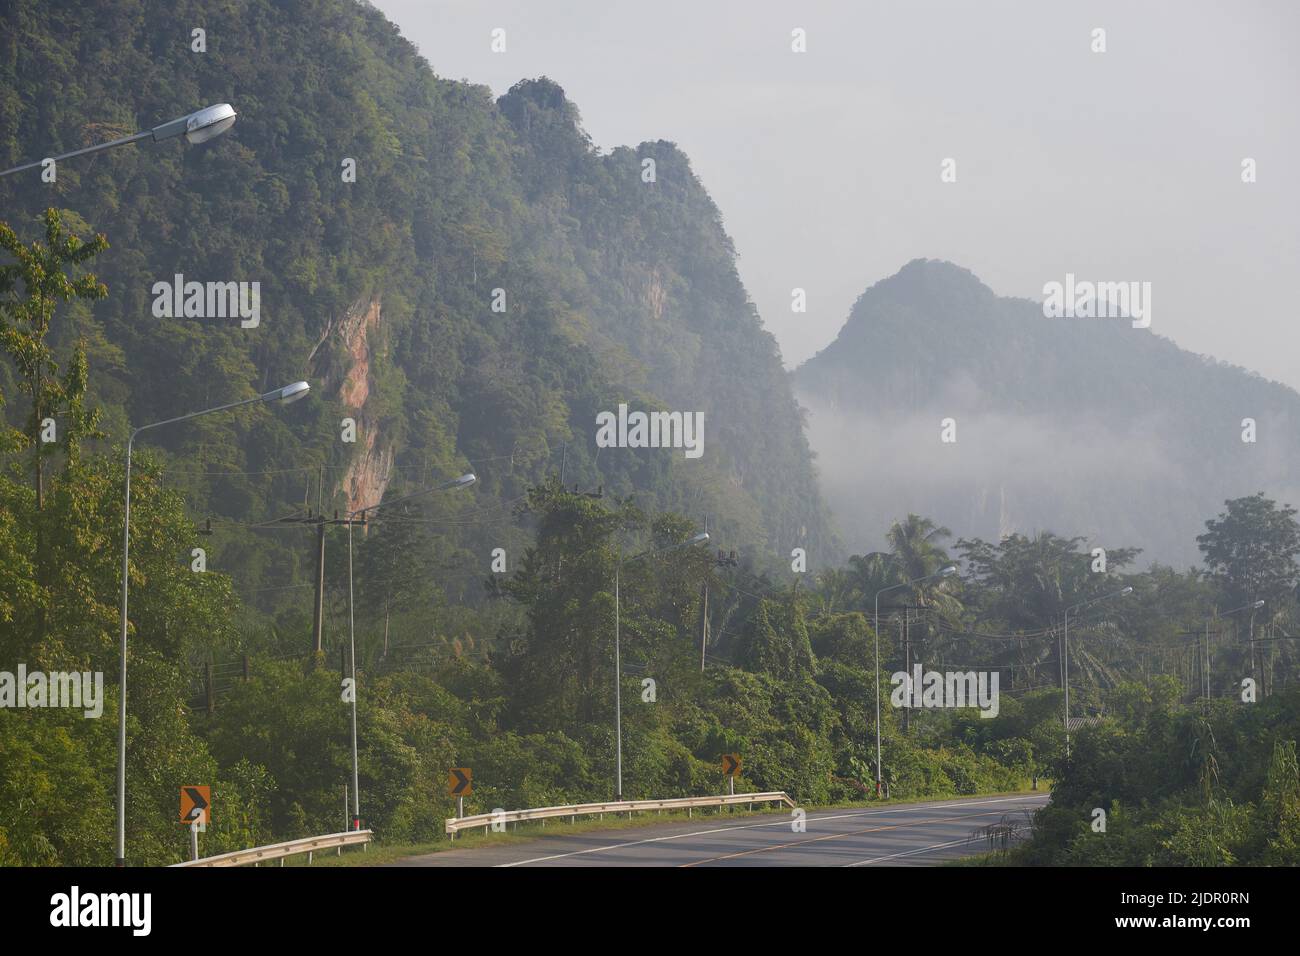 Asfalto camino a las montañas con niebla por la mañana Foto de stock